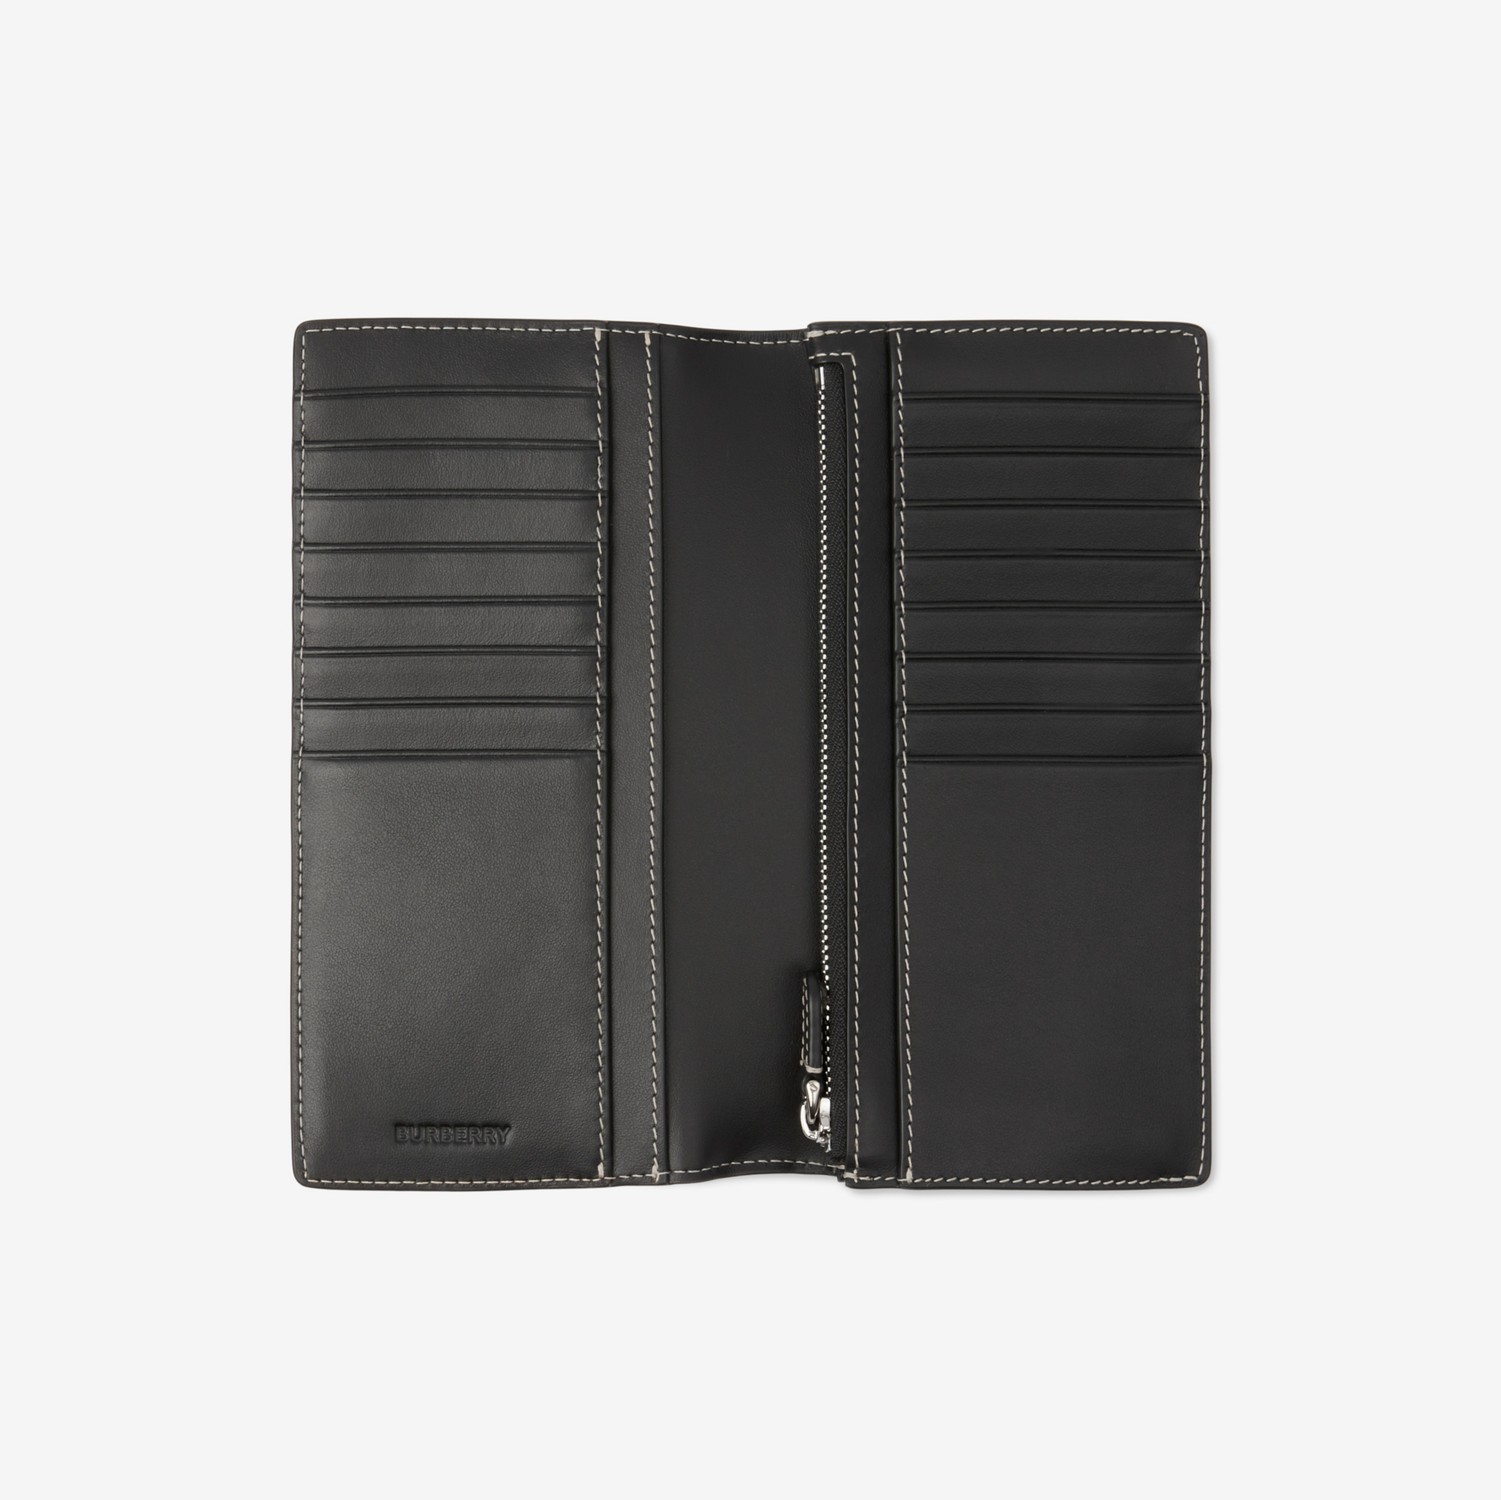 Brieftasche im Kontinentalformat aus Check-Gewebe und Leder